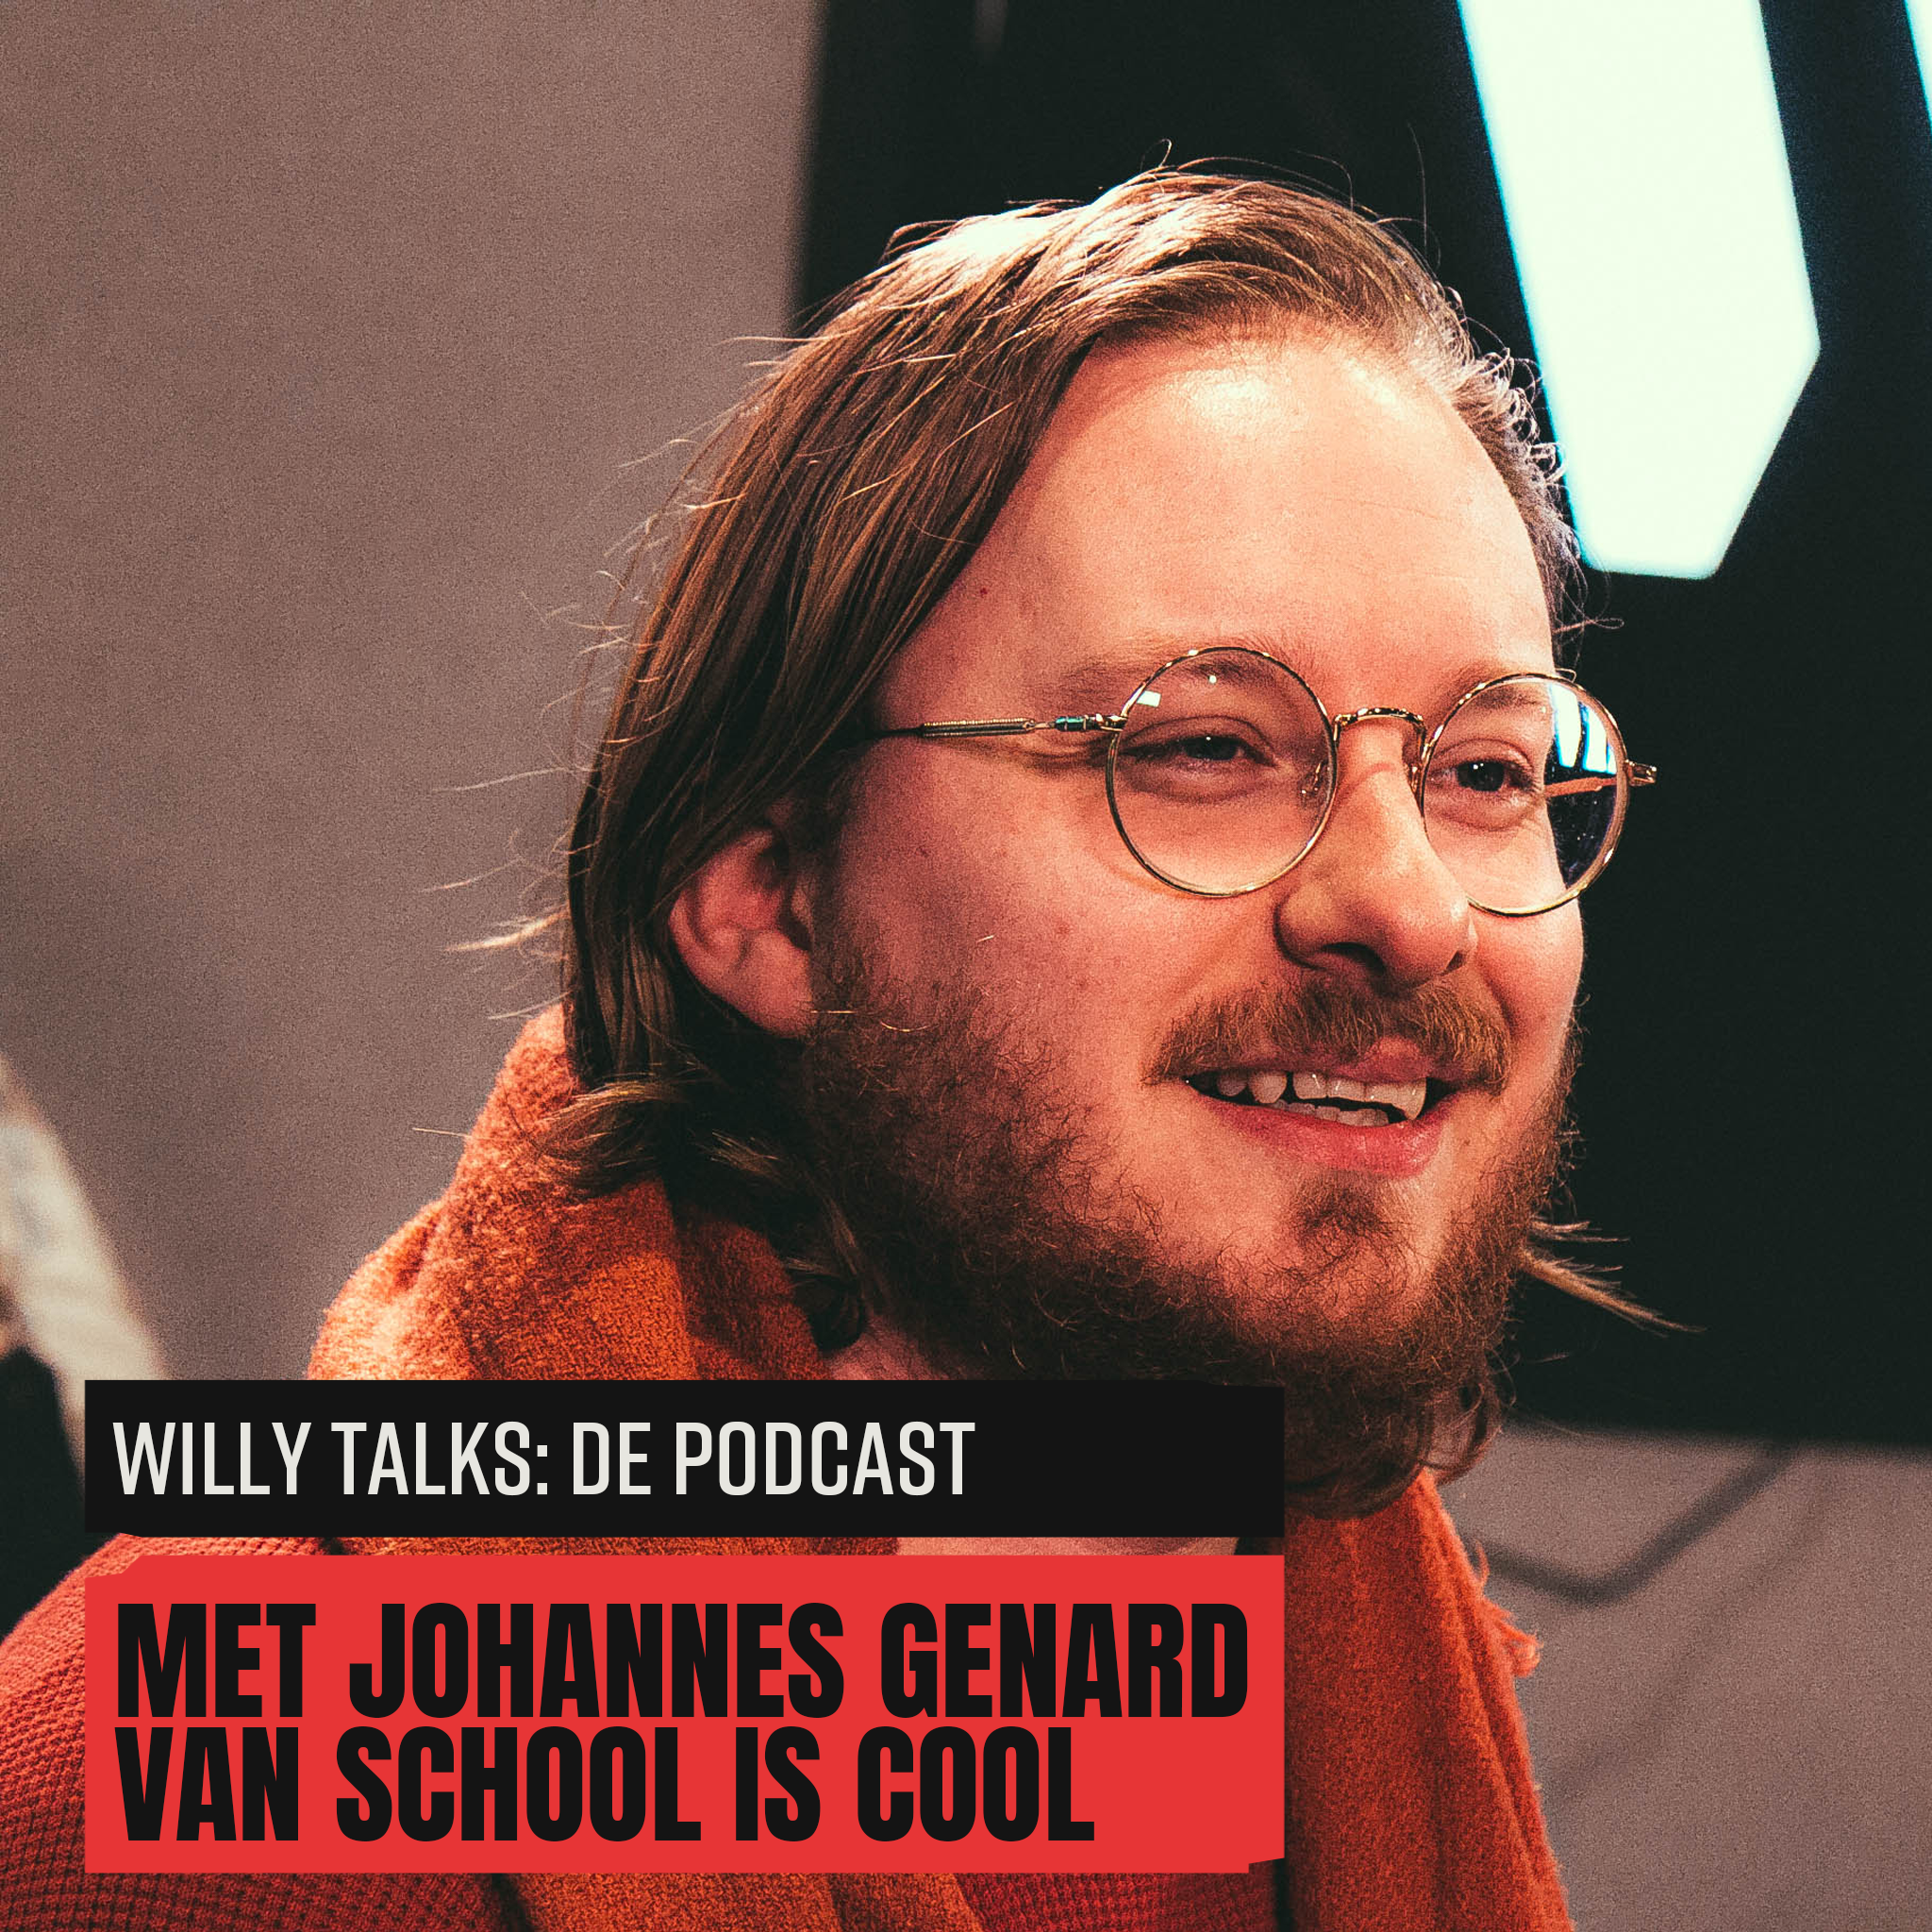 Willy talks  de podcast met johannes genard